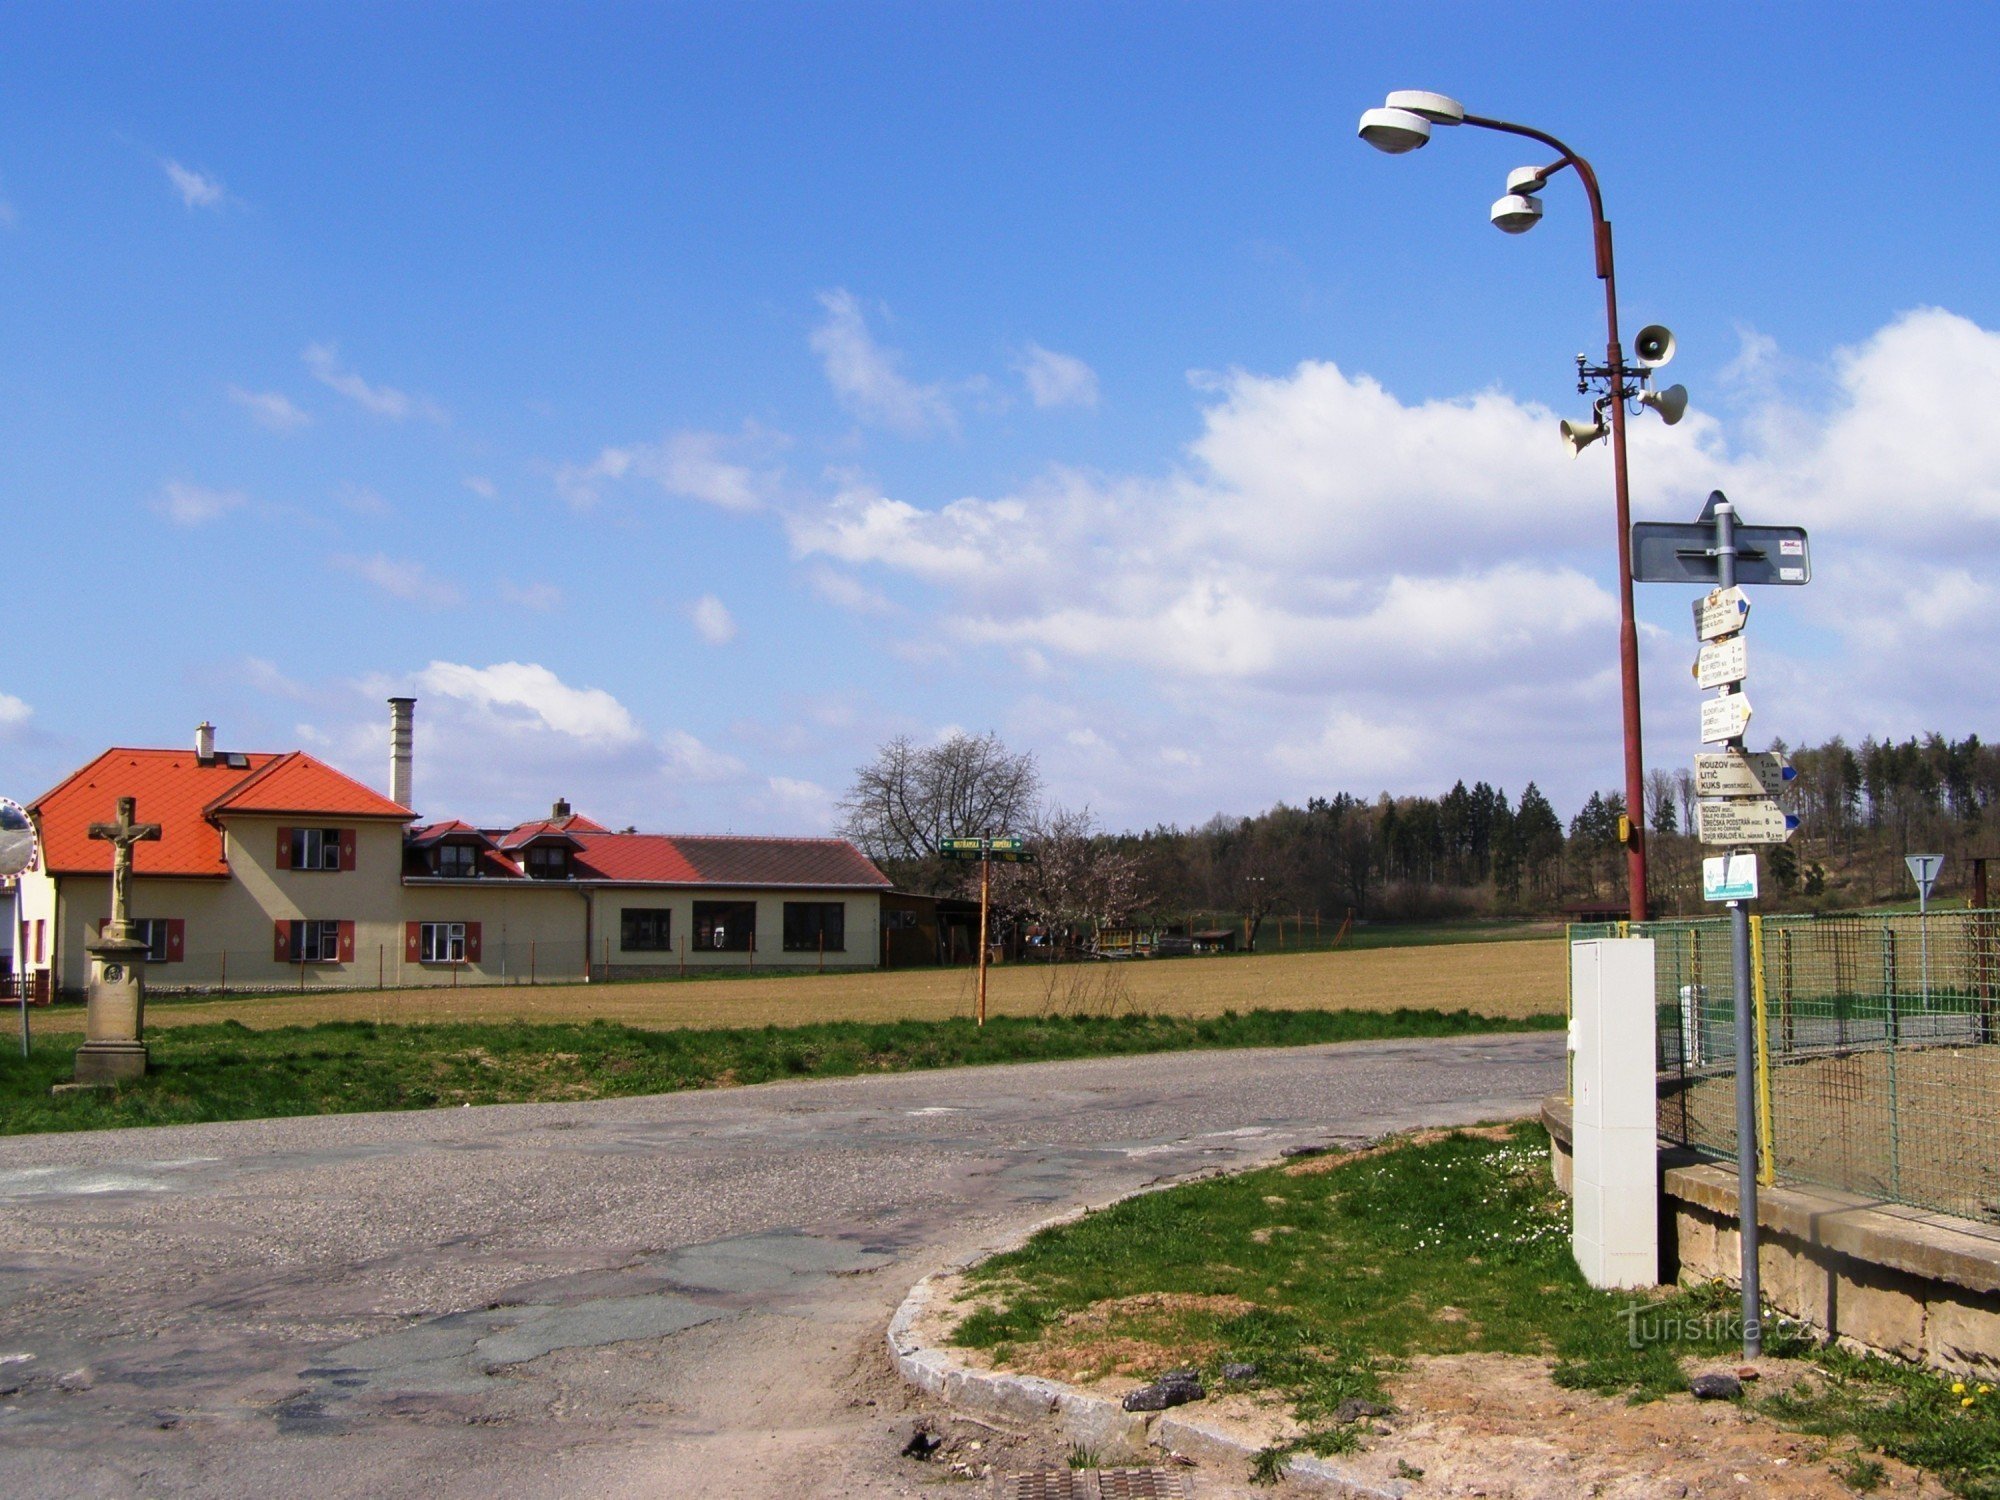 touristische Kreuzung Velichovka - westlich des Dorfes